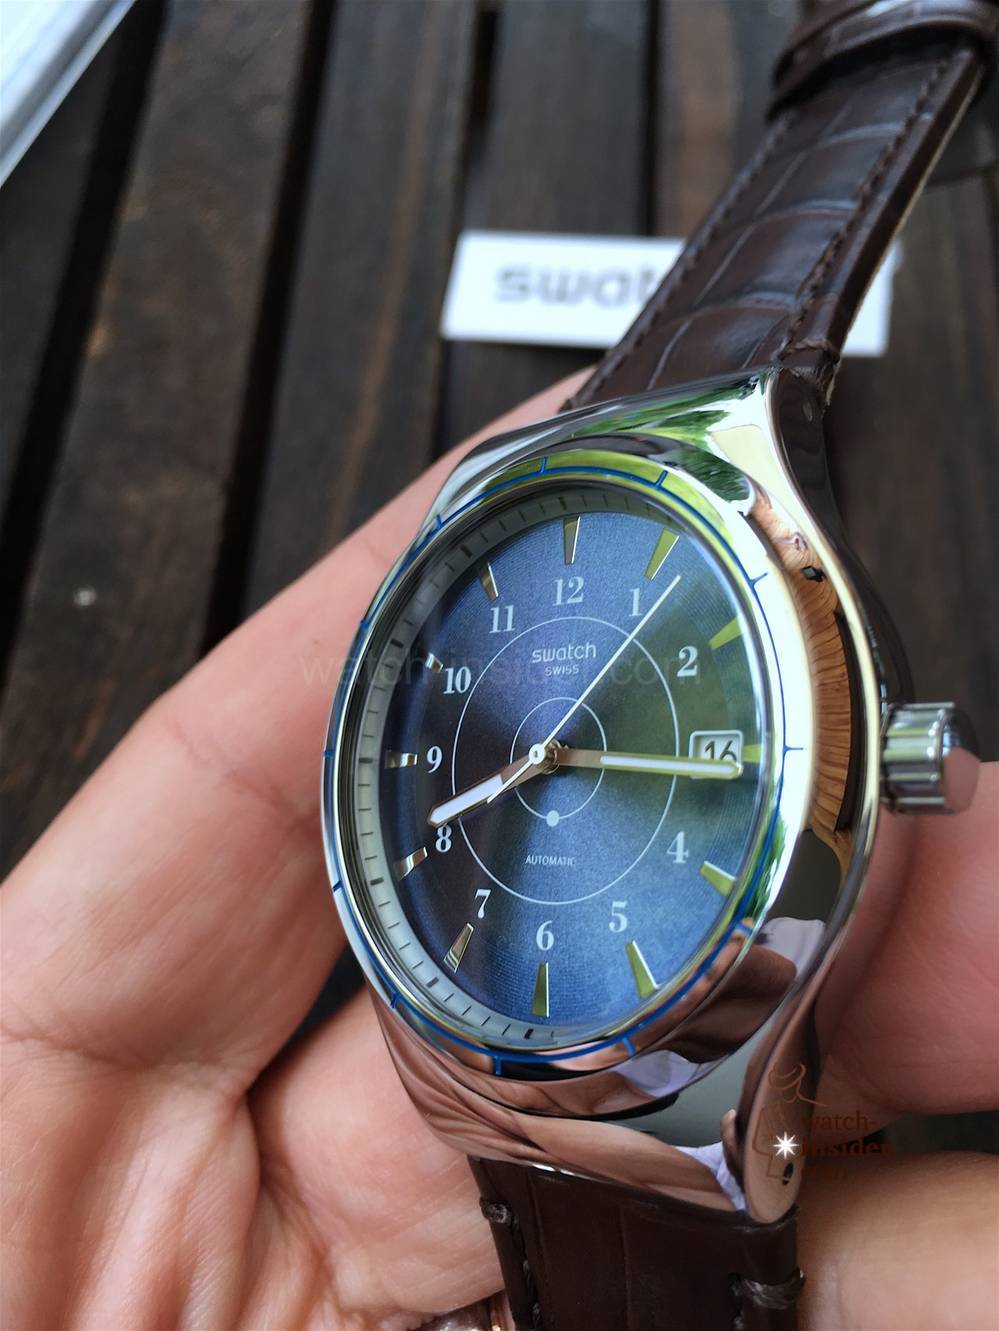 Ô hiển thị thời gian ở mẫu đồng hồ dây da Swatch